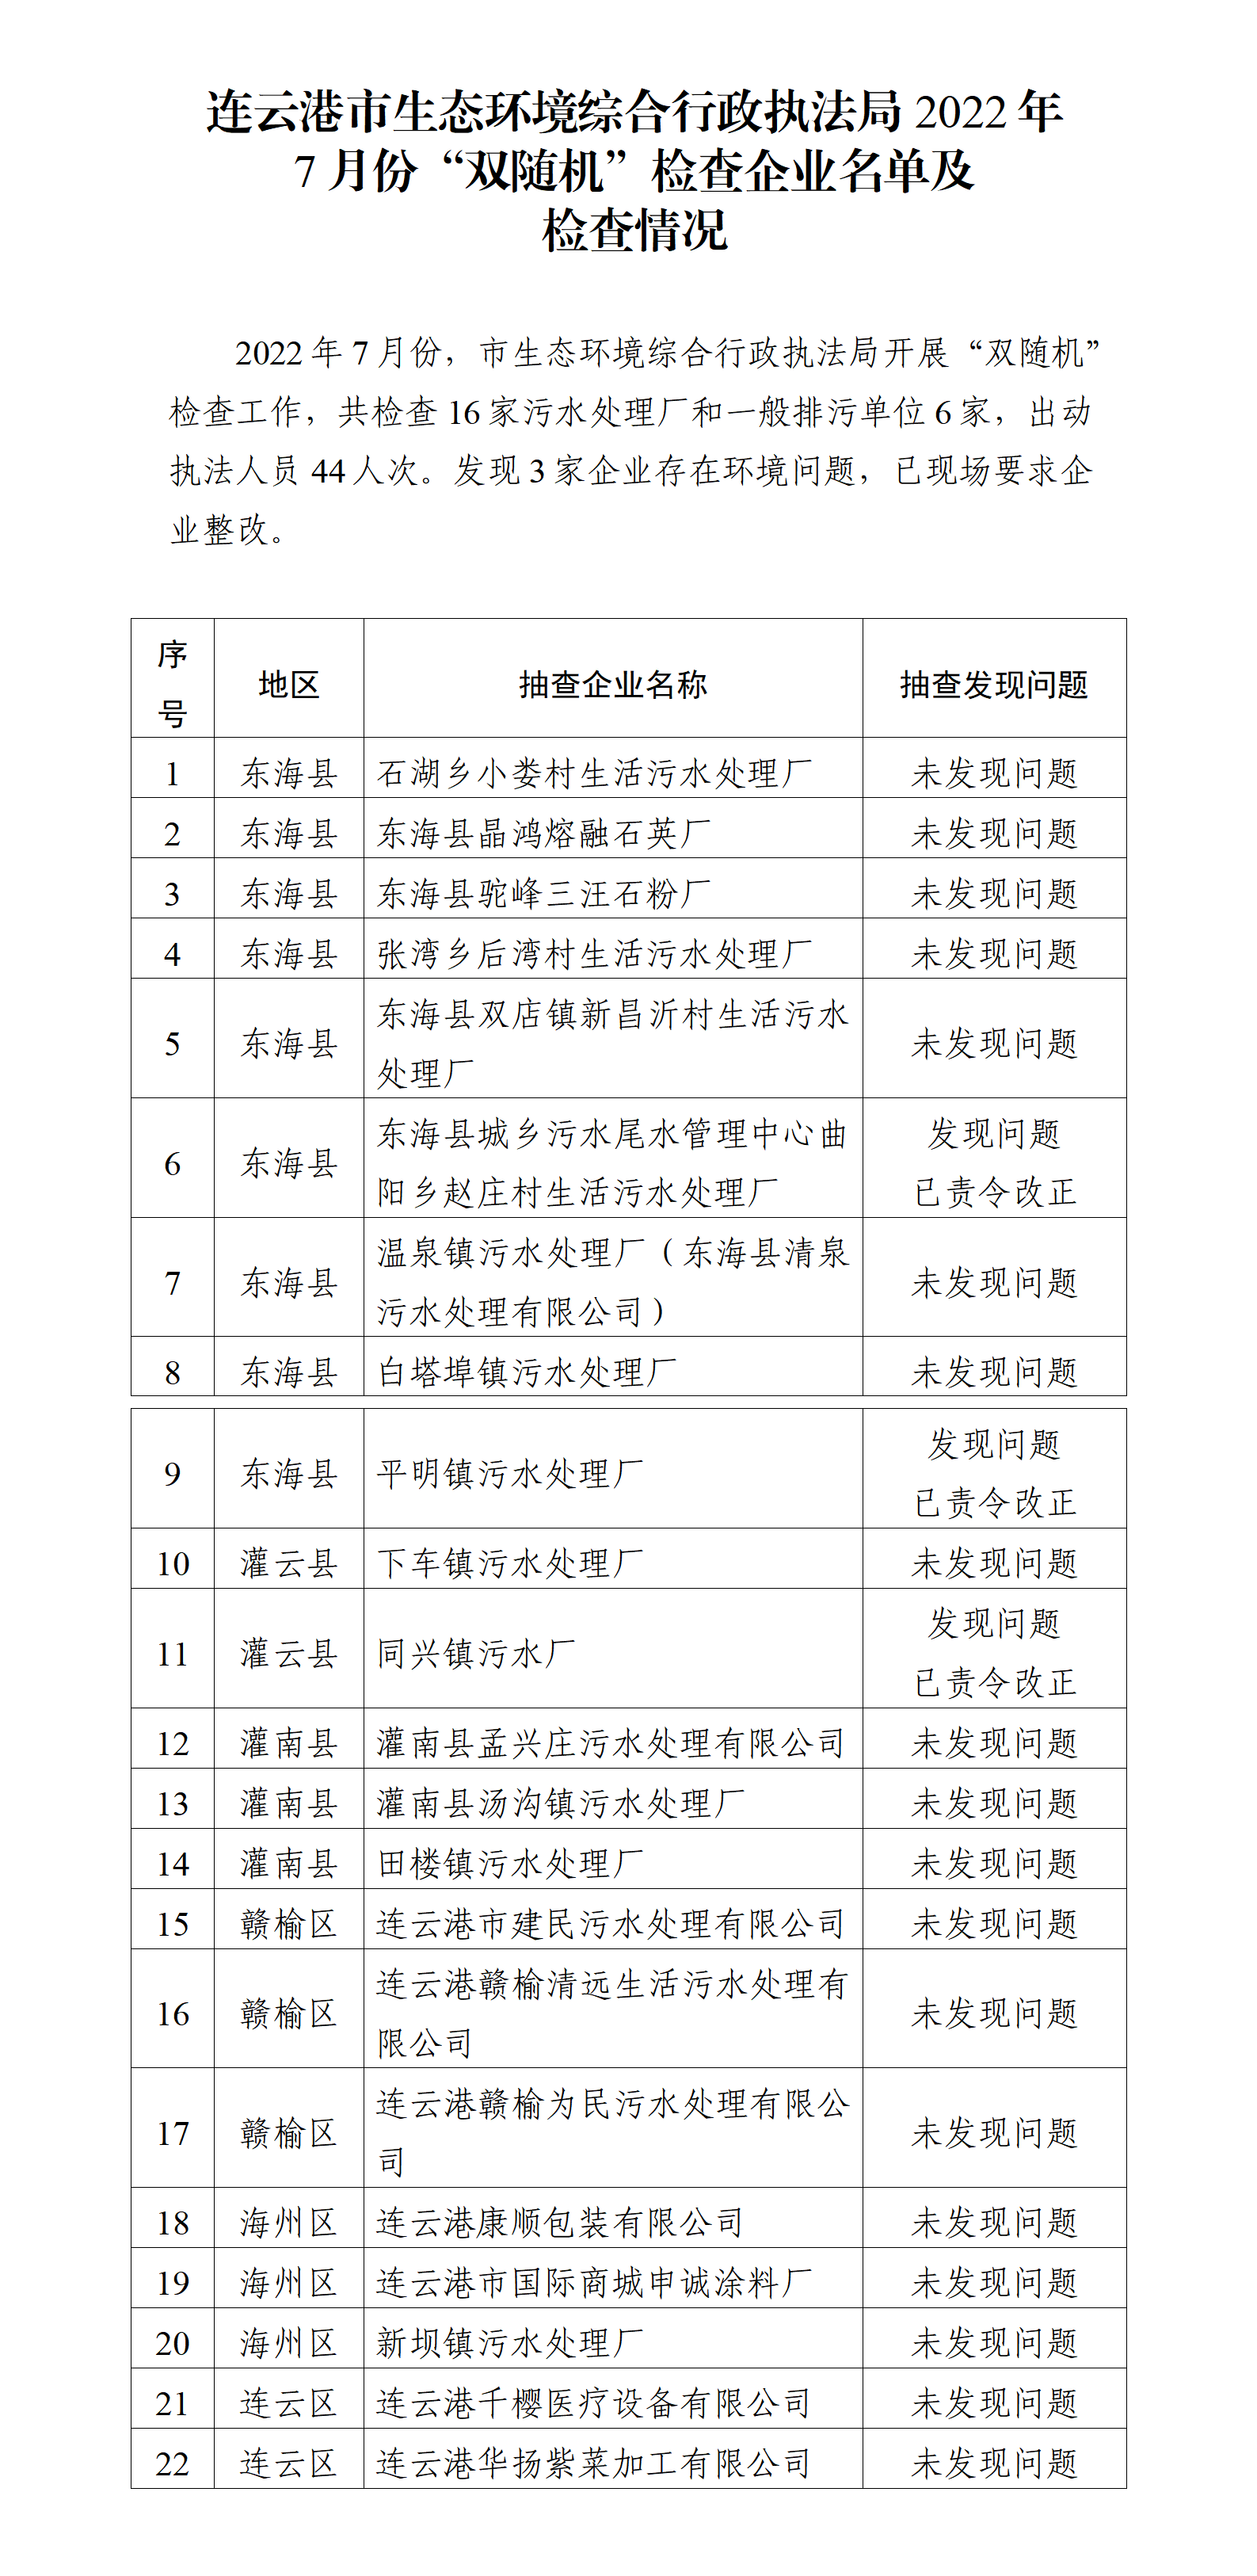 连云港市生态环境综合行政执法局2022年7月份“双随机”检查企业名单及检查情况.png